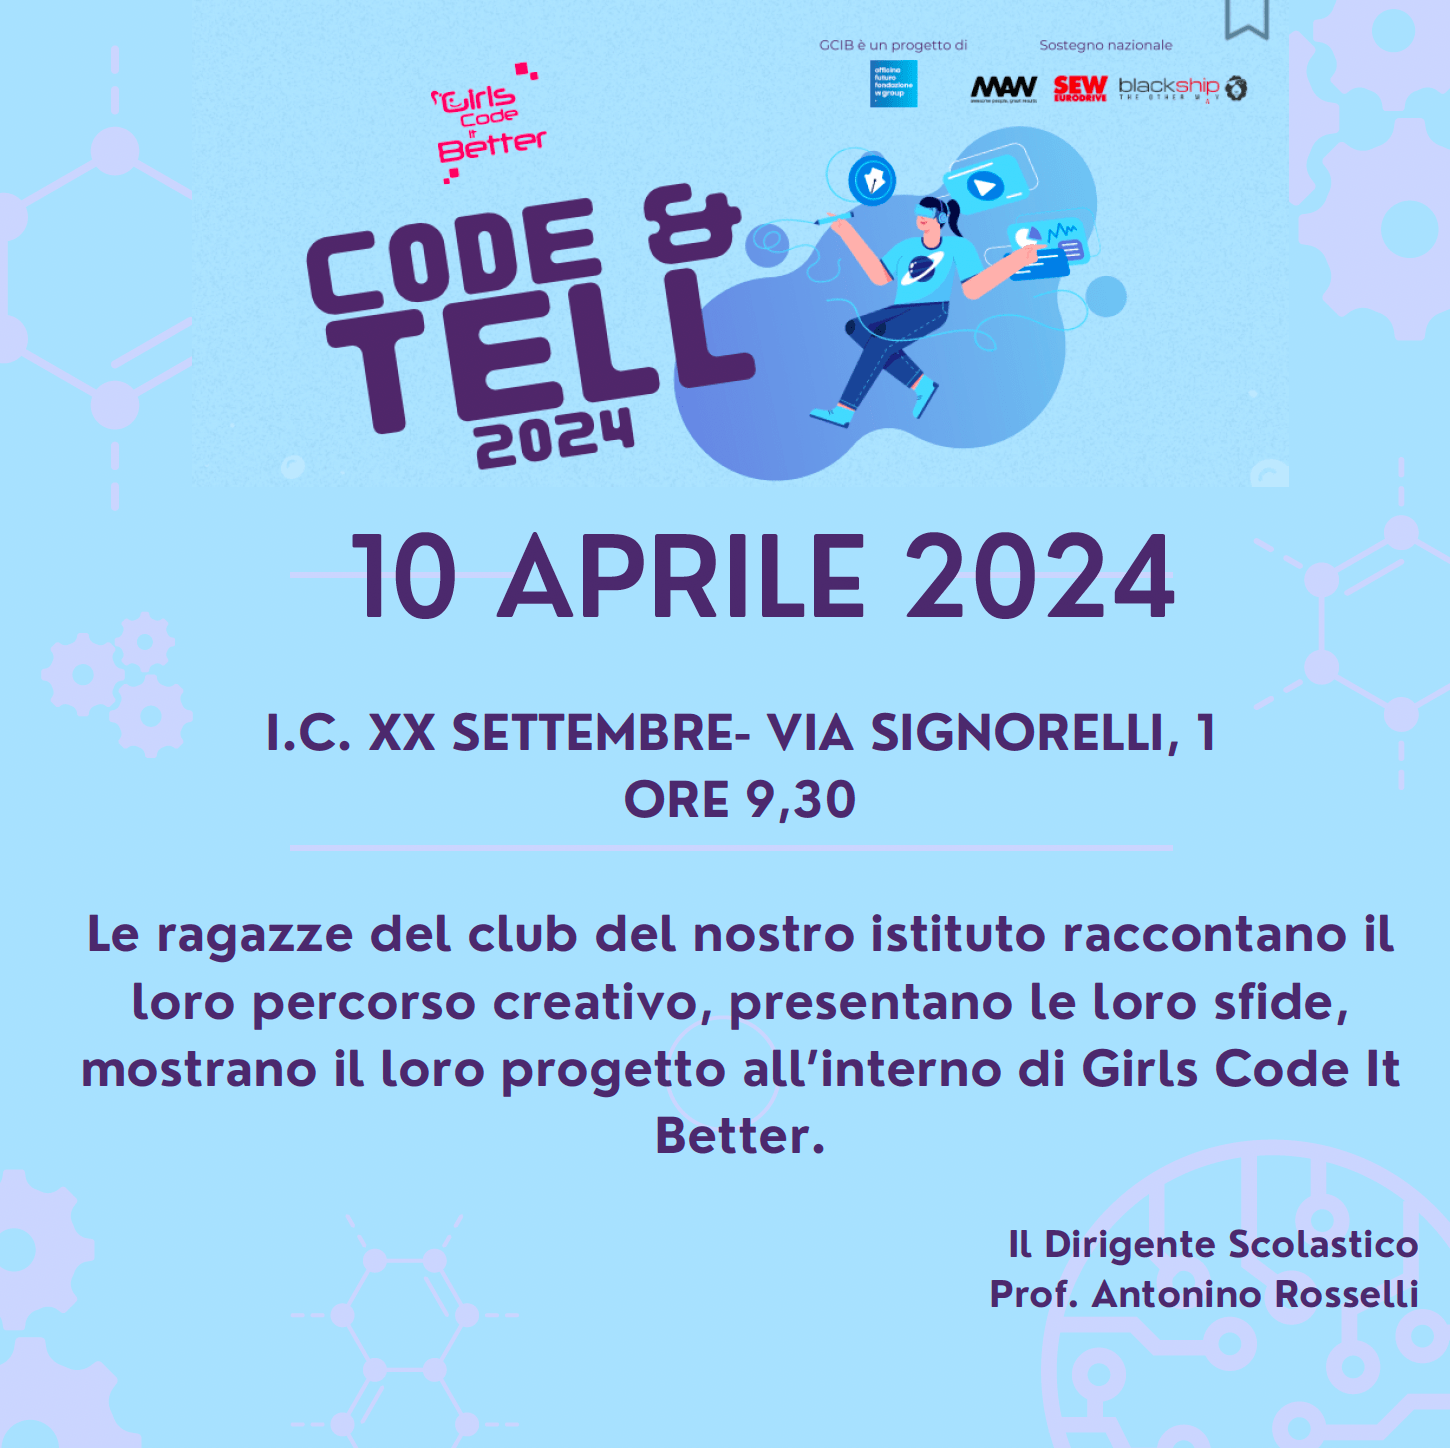 Evento finale progetto “Girls Code It Better”- Code&Tell, le ragazze di GCIB raccontano